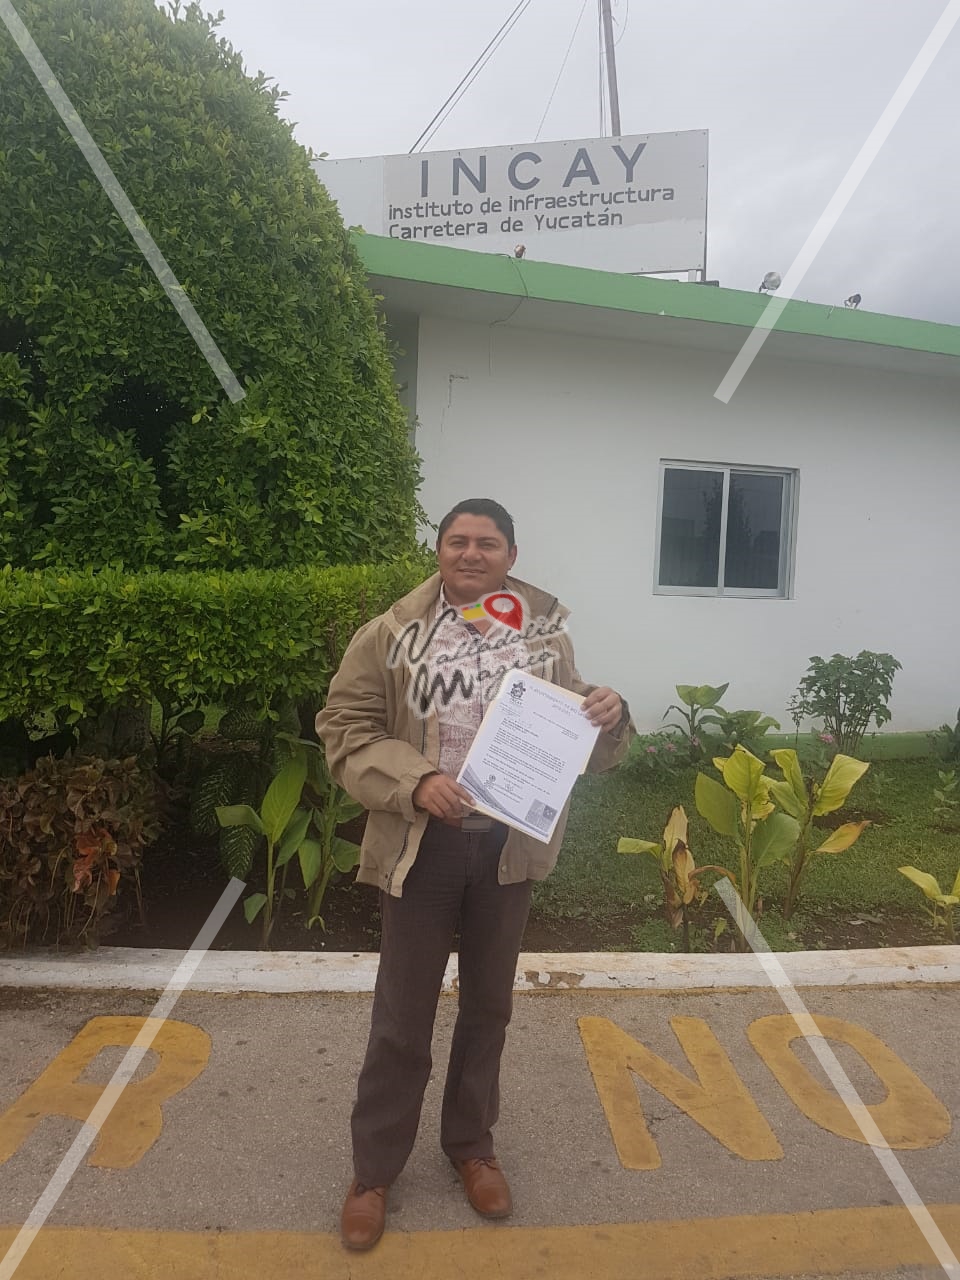 Alcalde de Río Lagartos acude ante el INCAY para entregar documentación para la solicitud de reparación de la carretera Río lagartos -Las coloradas